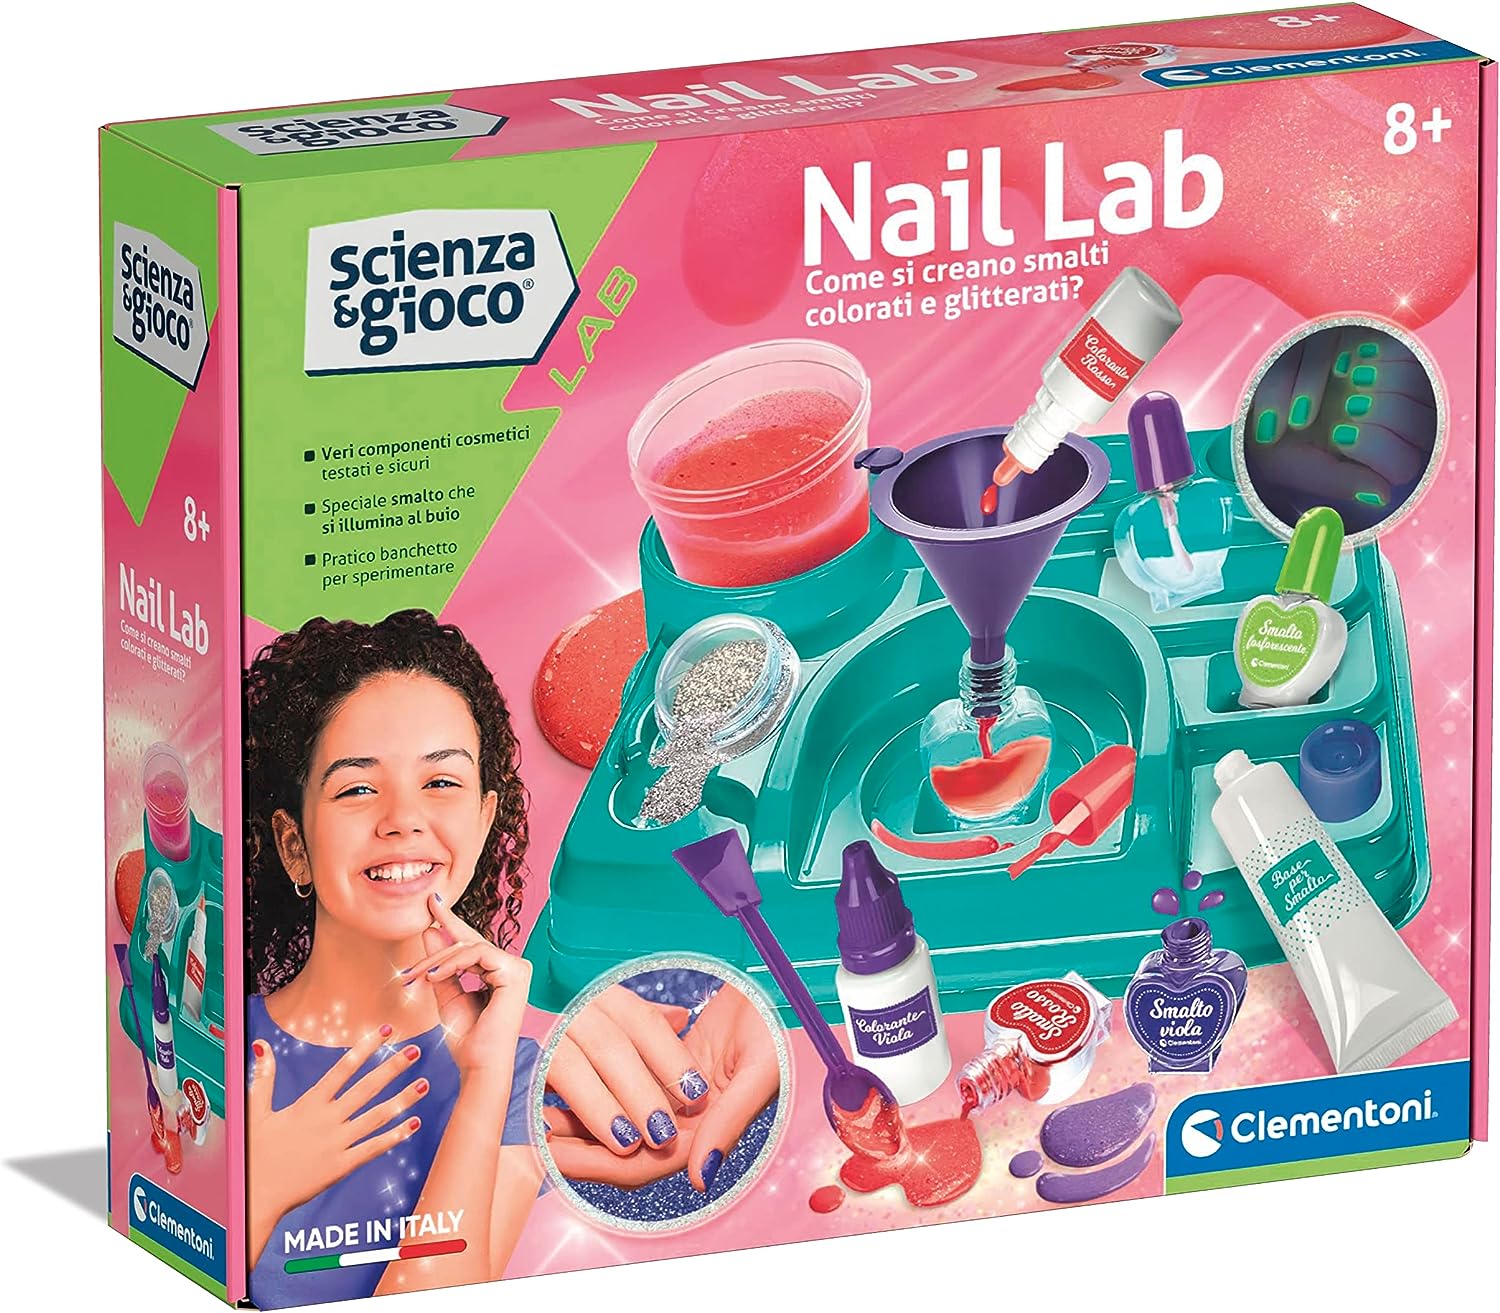 Nail Lab Scienza e Gioco